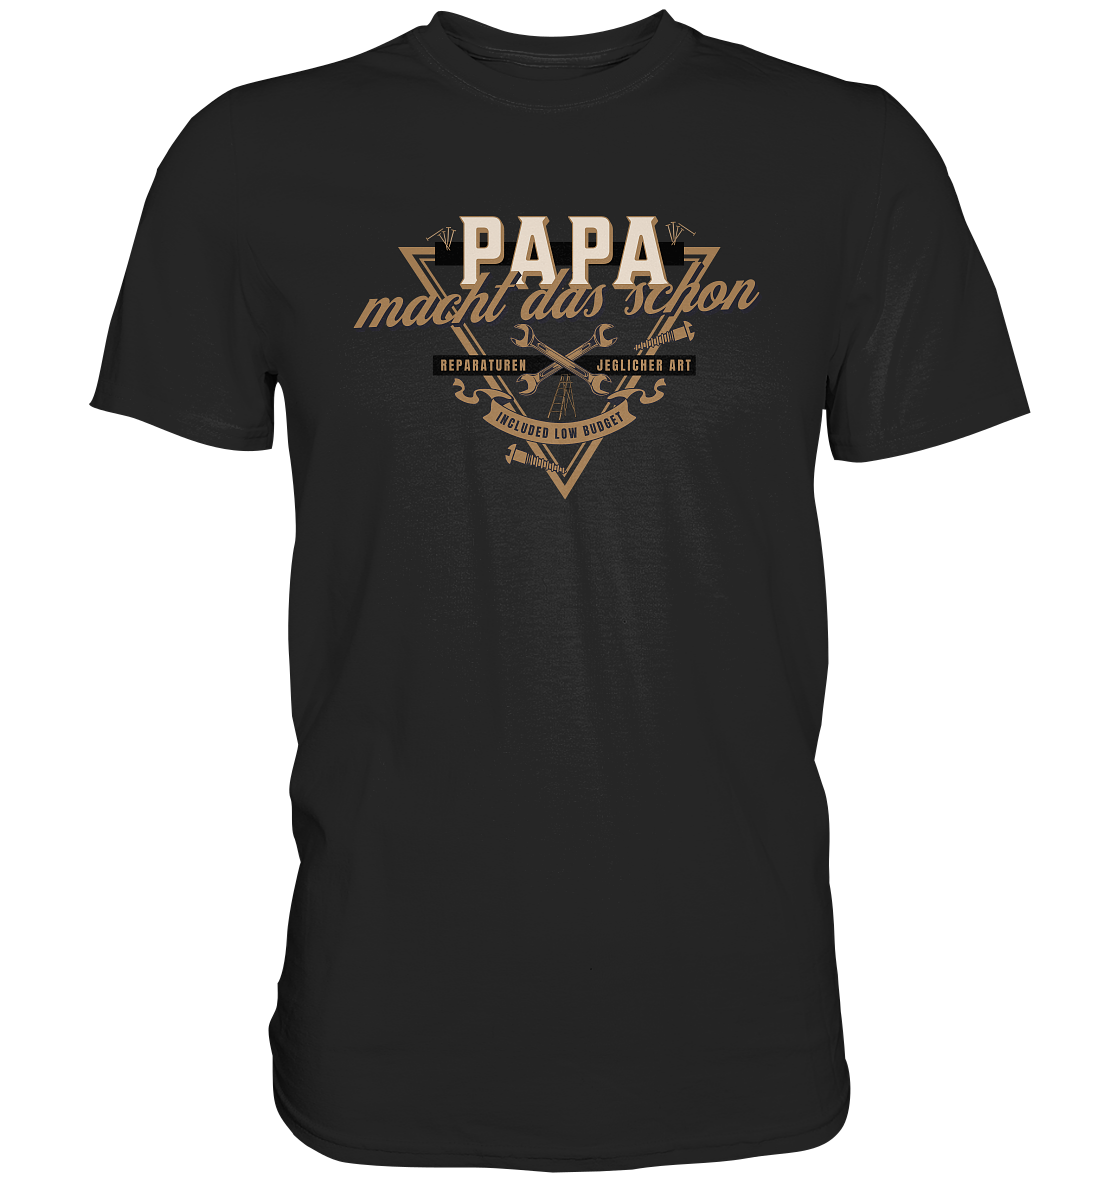 "Papa macht das schon" - Premium Shirt